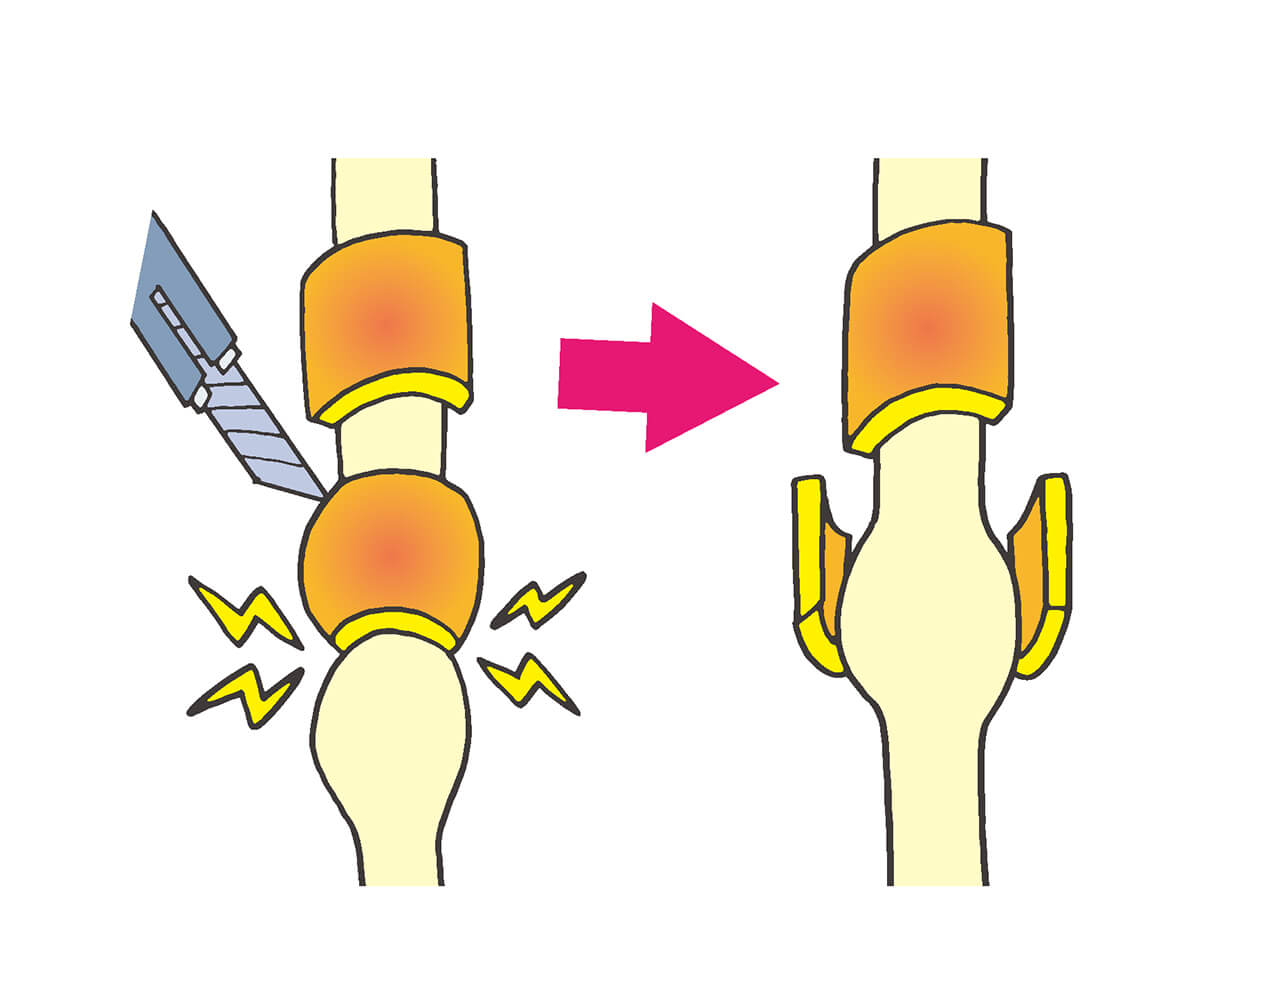 腫れて厚くなった腱鞘の一部を切開し、腱の通りをスムーズにする手術「腱鞘切開」